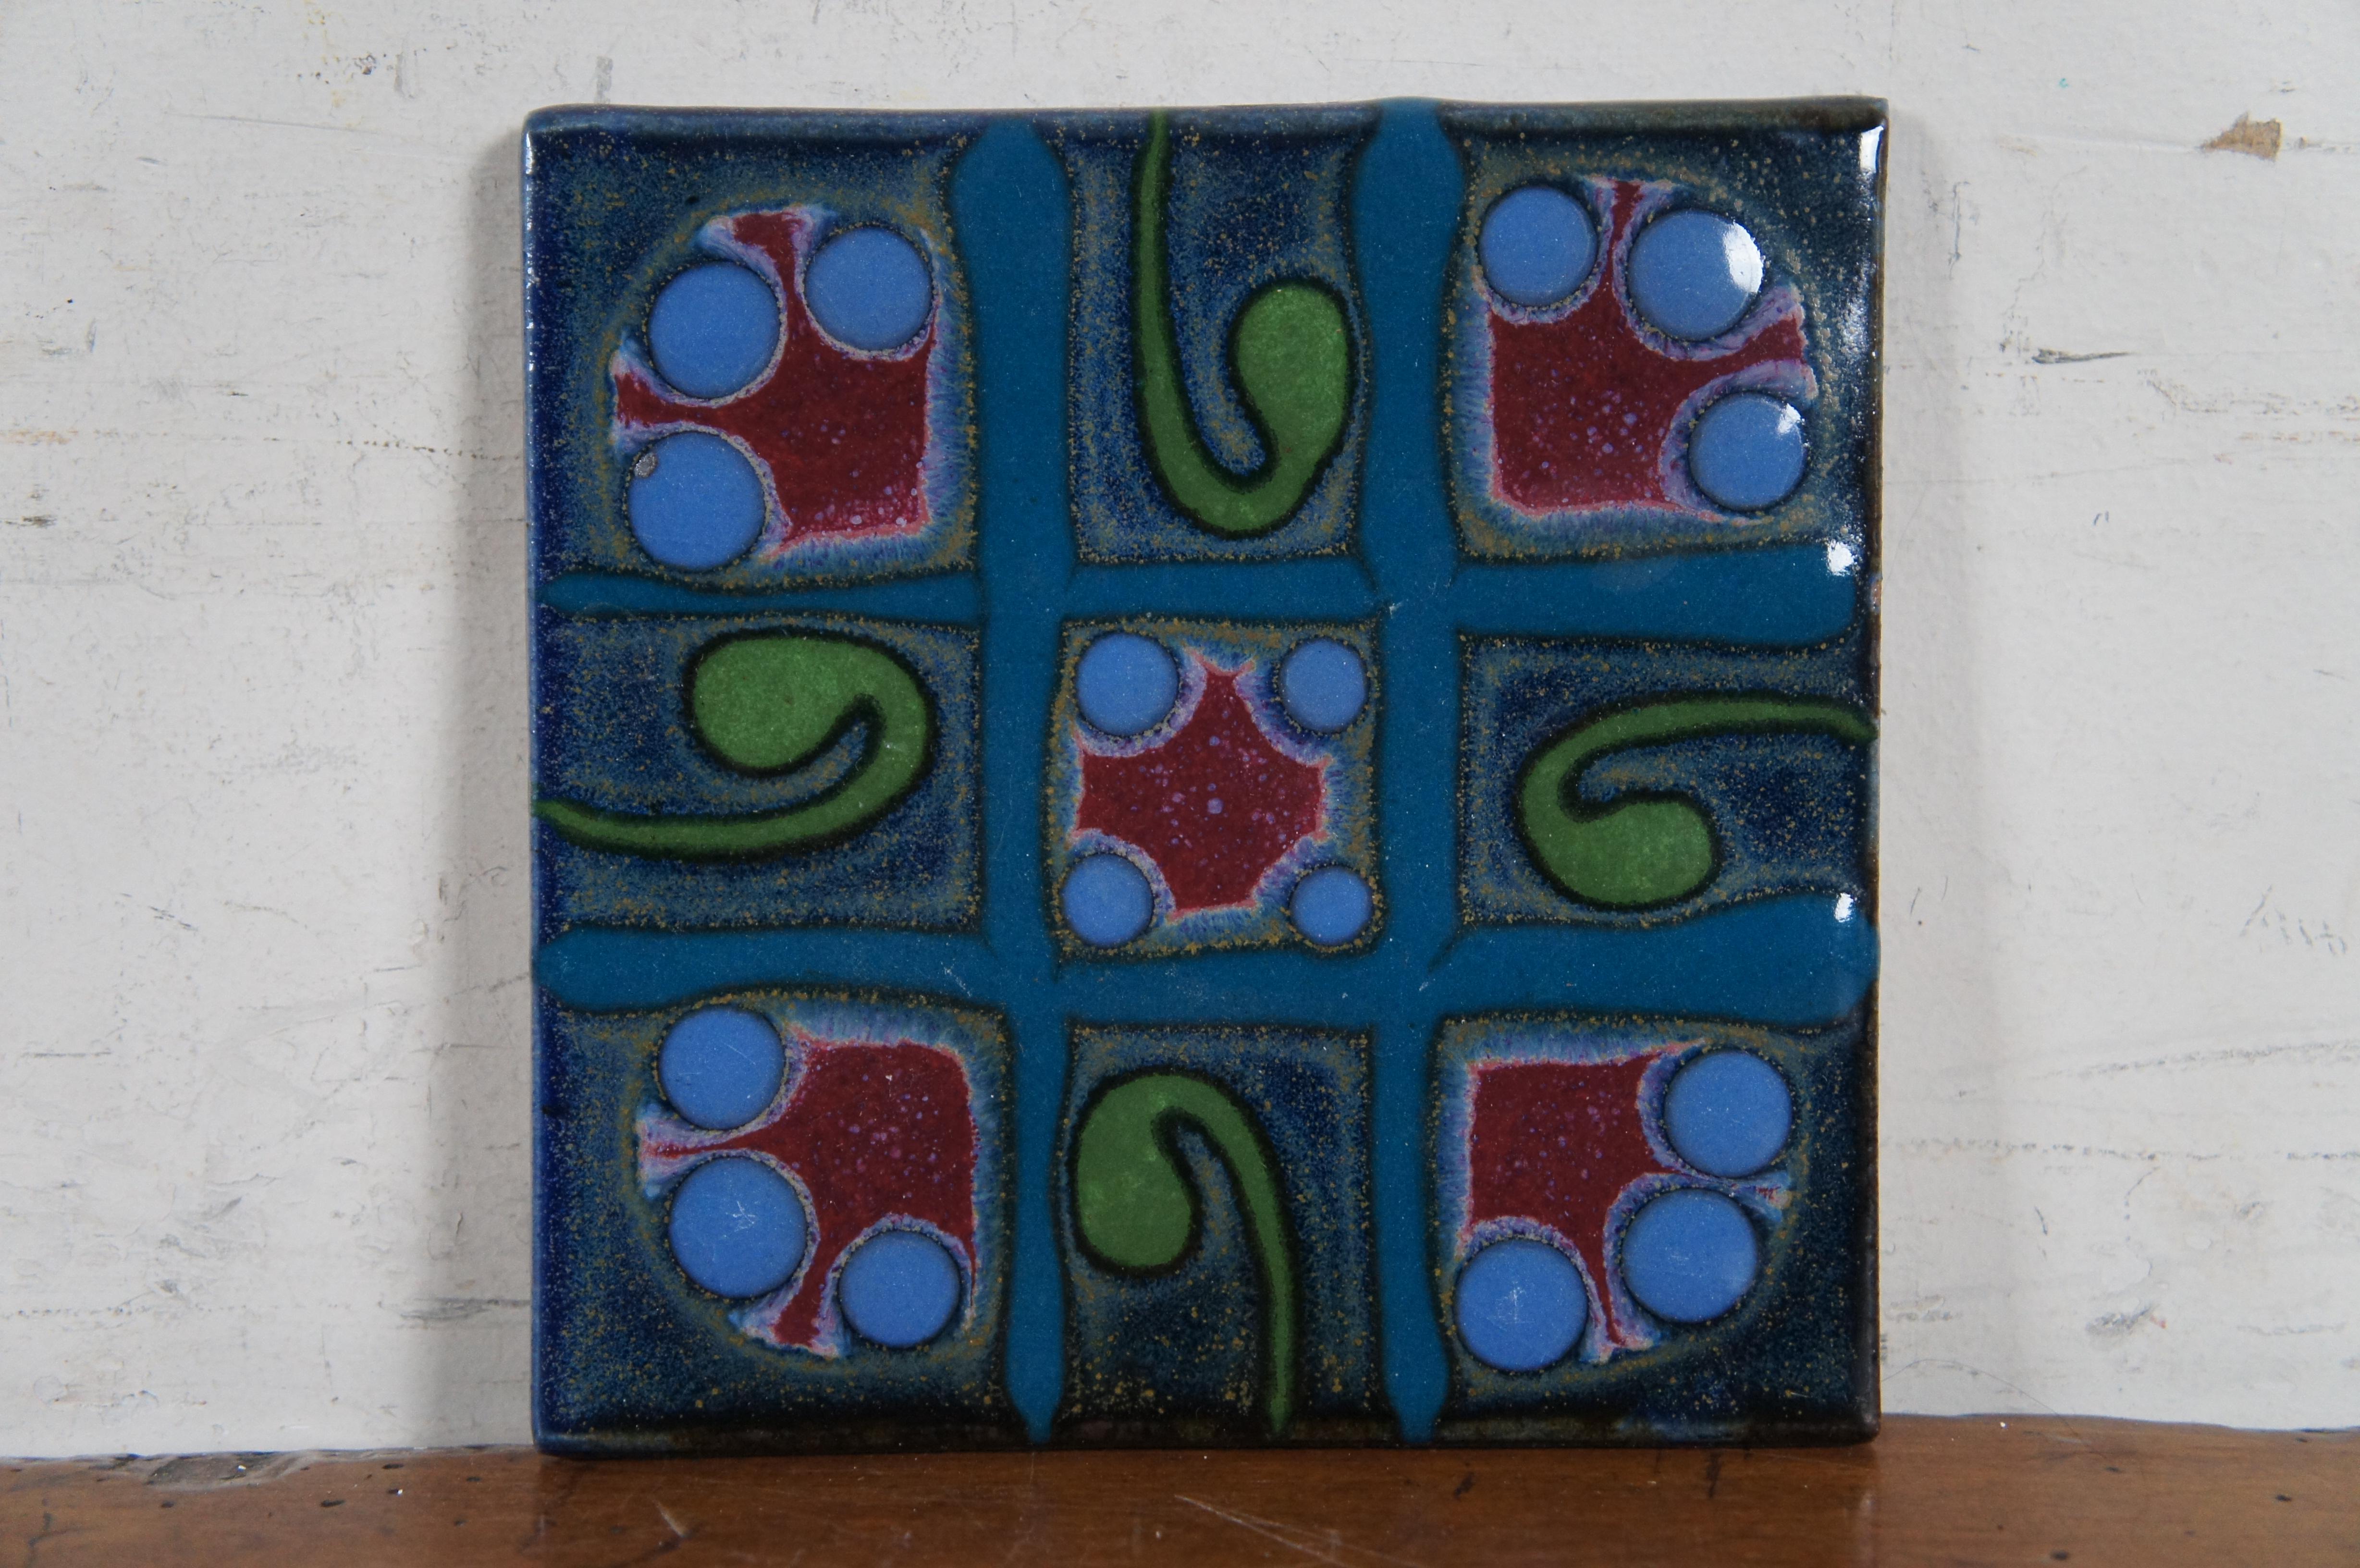 4 Matthew Patton Orcas Island Art Pottery Trivets Pad Pot Rest Ceramic Tile MCM 4